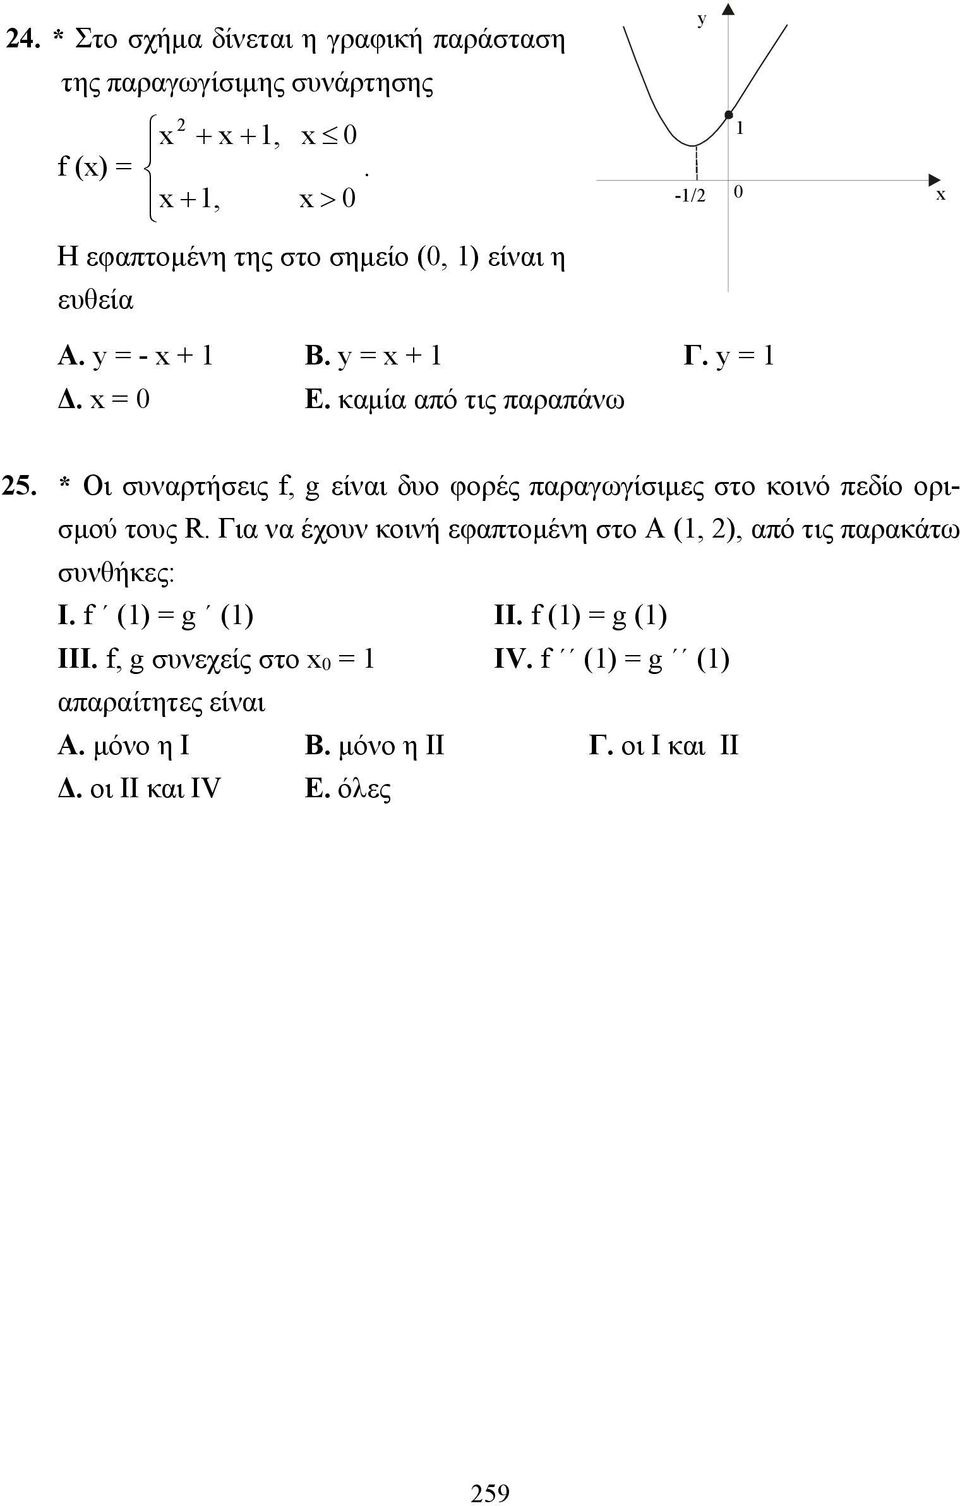 * Οι συναρτήσεις f, g είναι δυο φορές παραγωγίσιμες στο κοινό πεδίο ορισμού τους R.